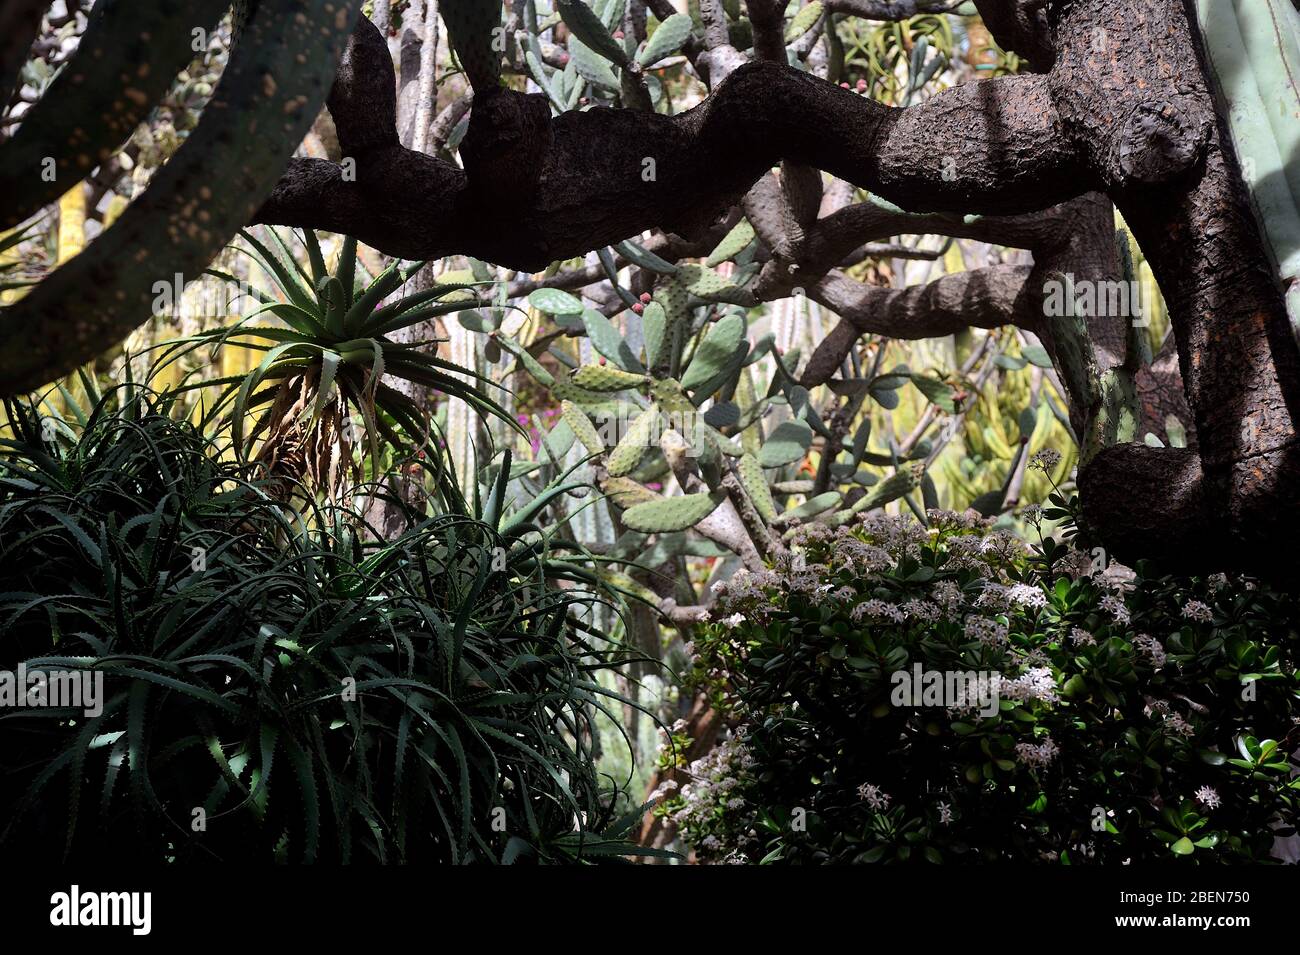 Besuchen Sie den exotischen Garten von Monaco, wo es riesige Sammlungen von Kakteen und Sukkulenten gibt Stockfoto